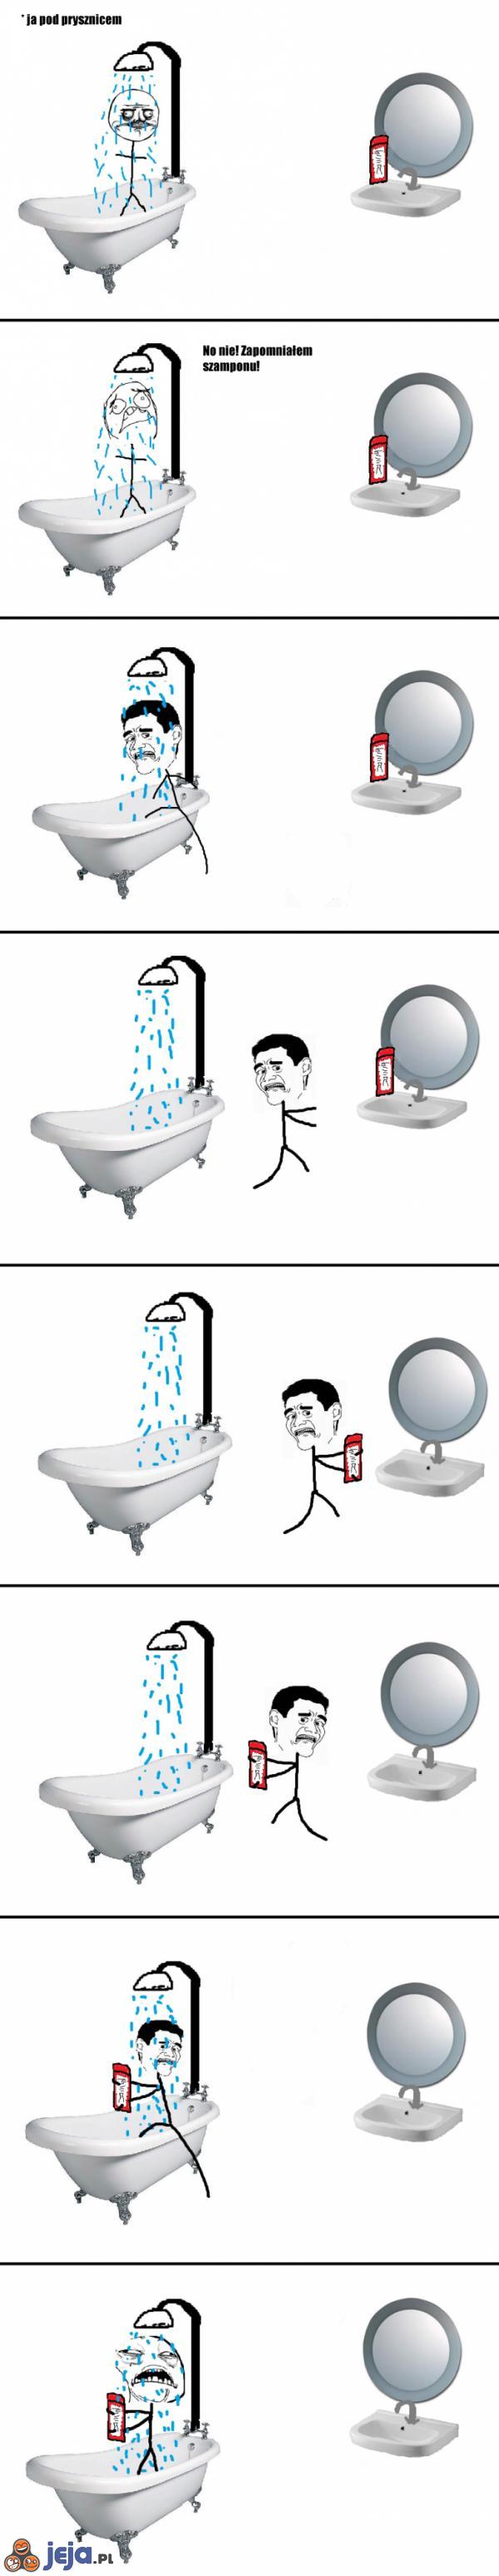 Gdy zapomnisz szamponu pod prysznicem